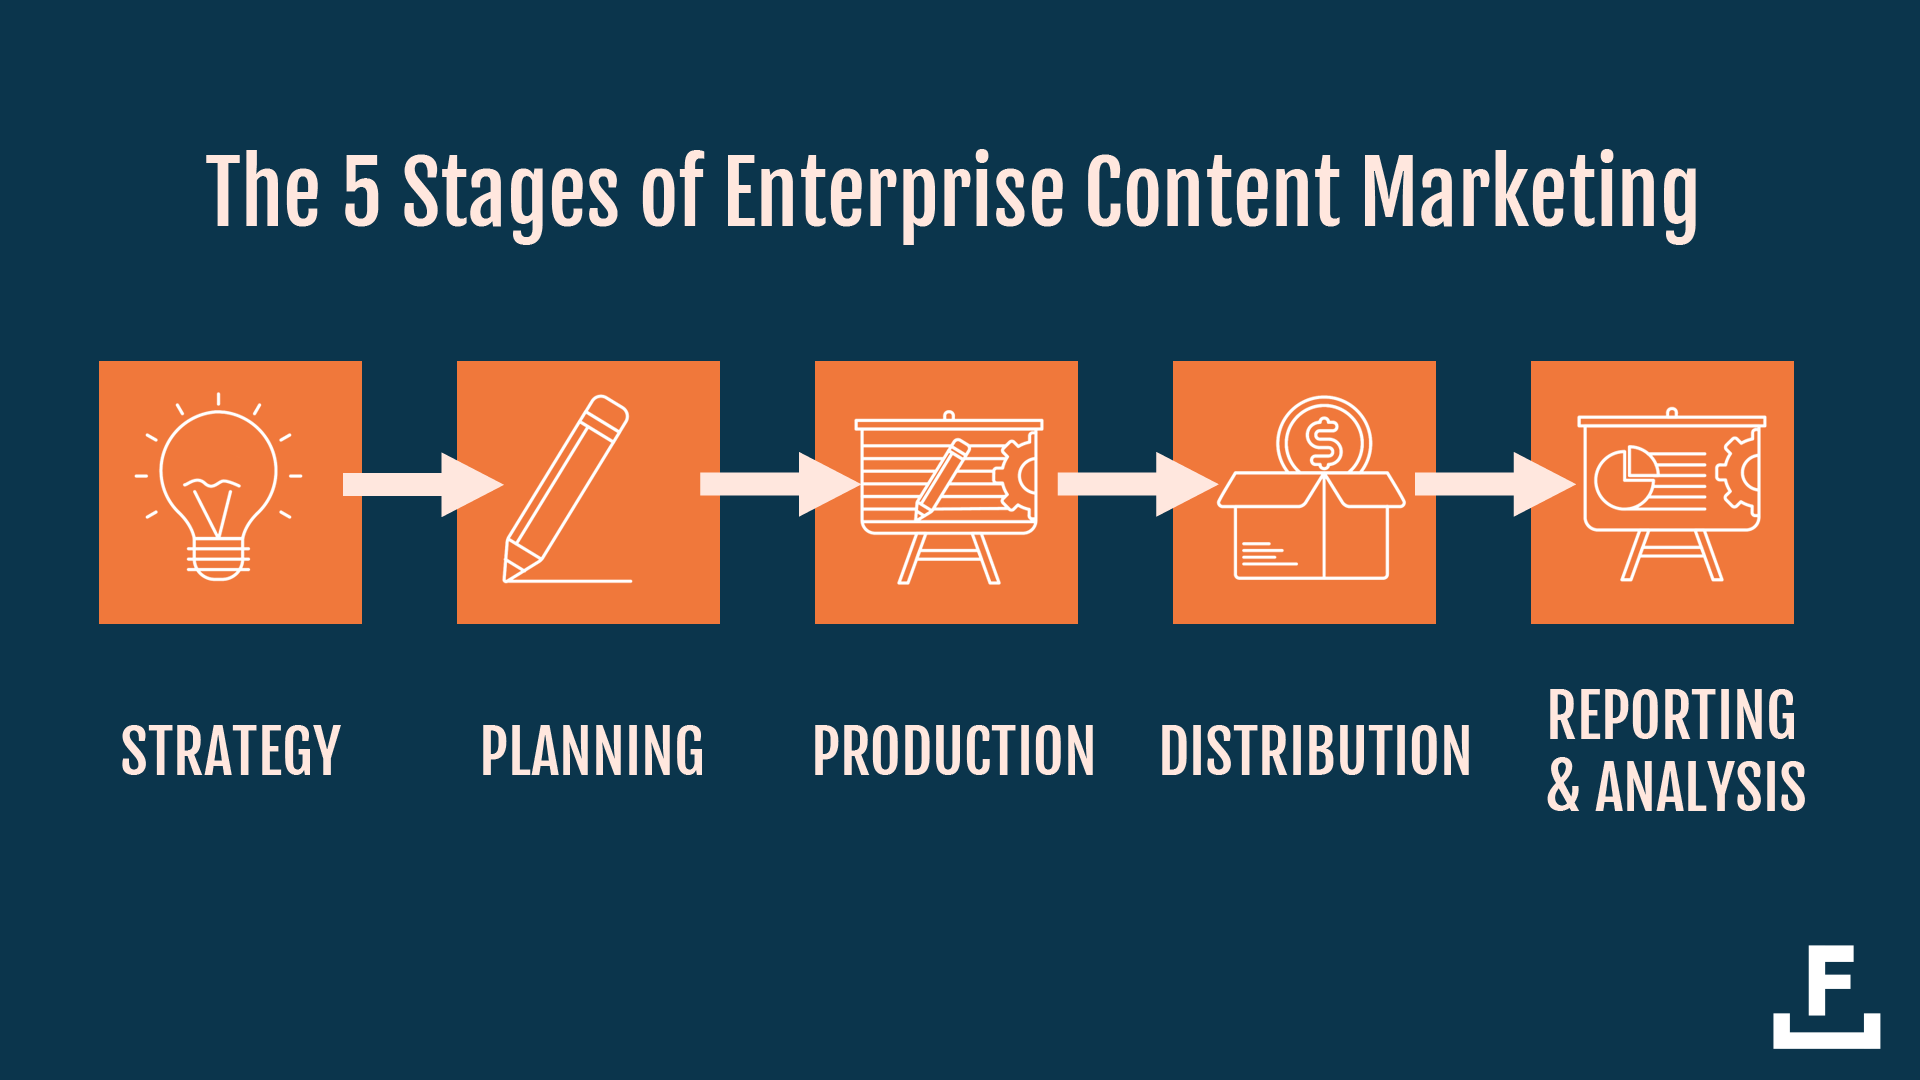 Para obtener el contenido del producto a nivel empresarial, es necesario pasar por 5 etapas: estrategia, planificación, producción, distribución y análisis.